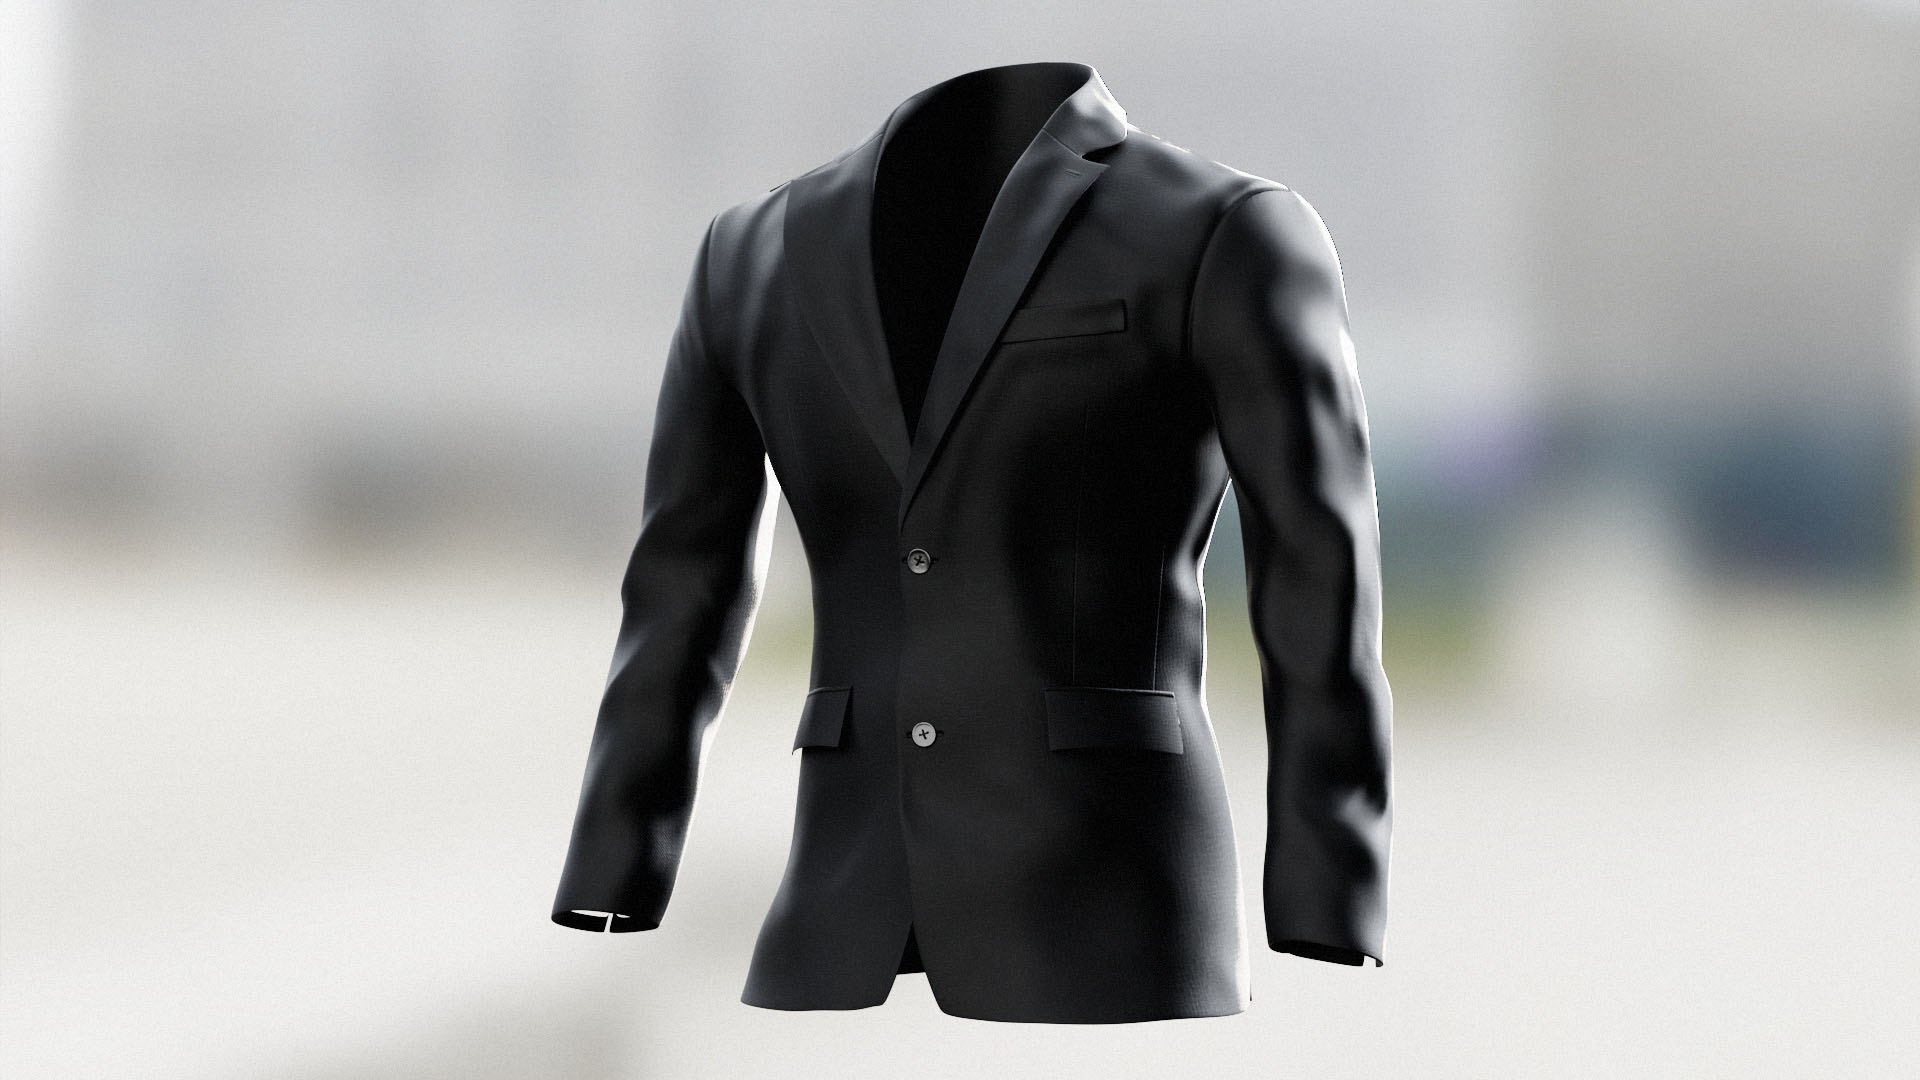 Suit Jacket 3D Model - TurboSquid 2053212